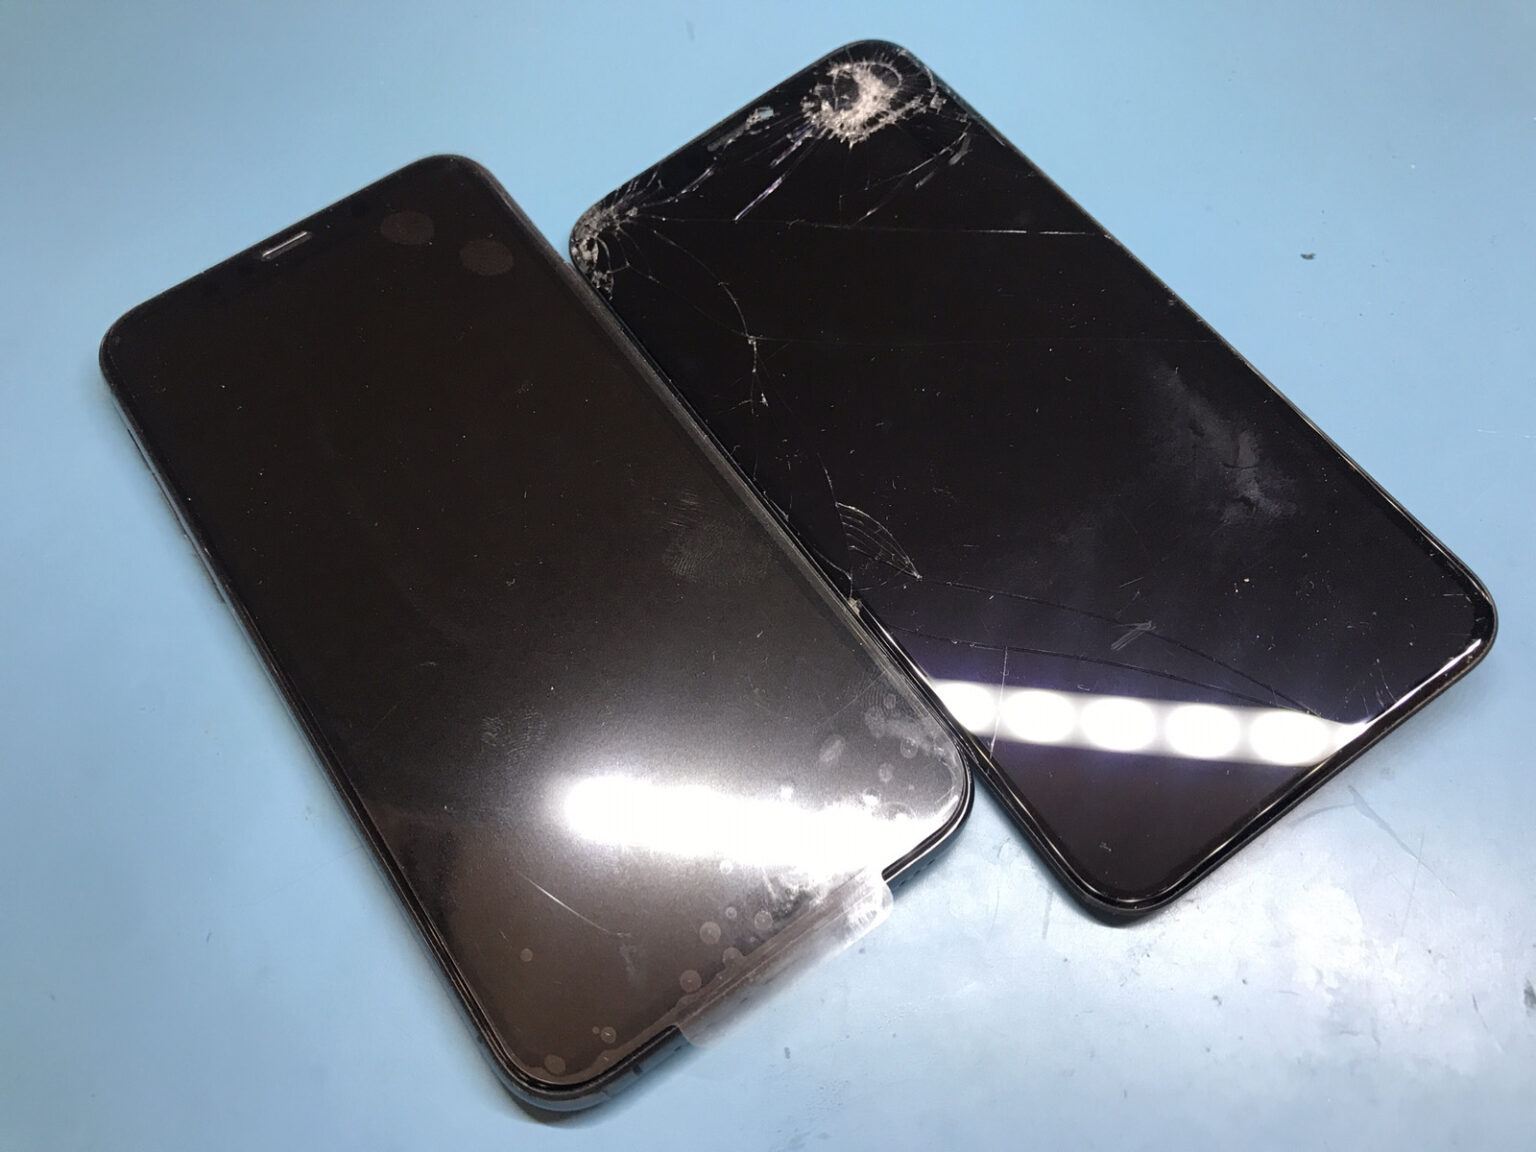 「SIMエラー」になった時の対処法 | 札幌でiPhone修理・故障は安心の道内企業スマートクリア 信用・信頼・高技術の『期待に応える誠実な